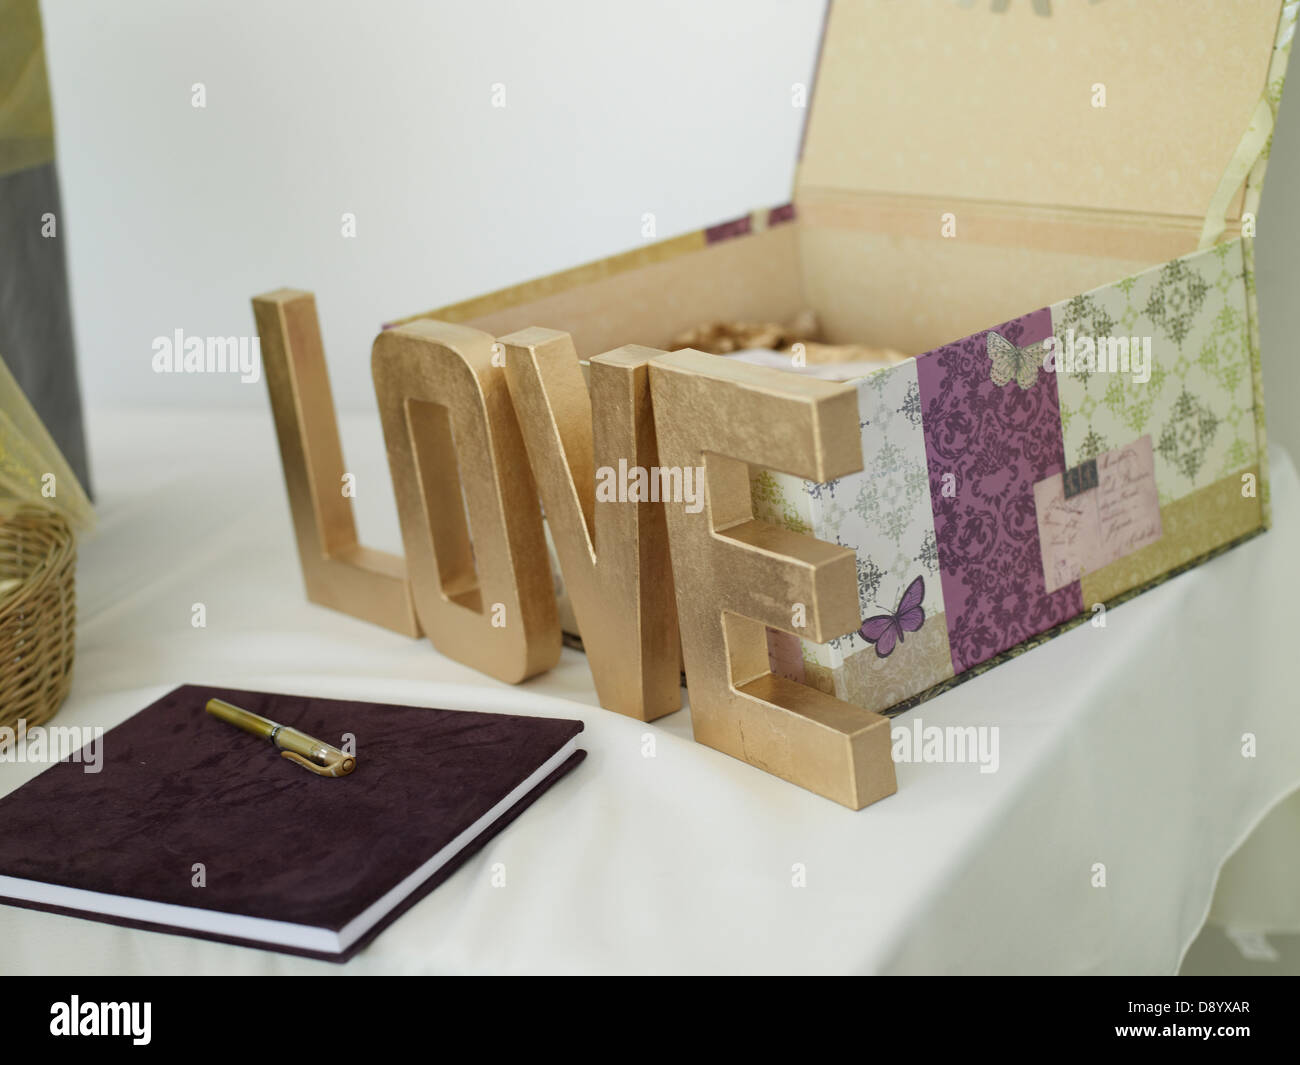 La disposiciгіn de decoraciones para bodas, incluida una pluma, un libro, una caja y un cartel que dice "amor". Foto de stock